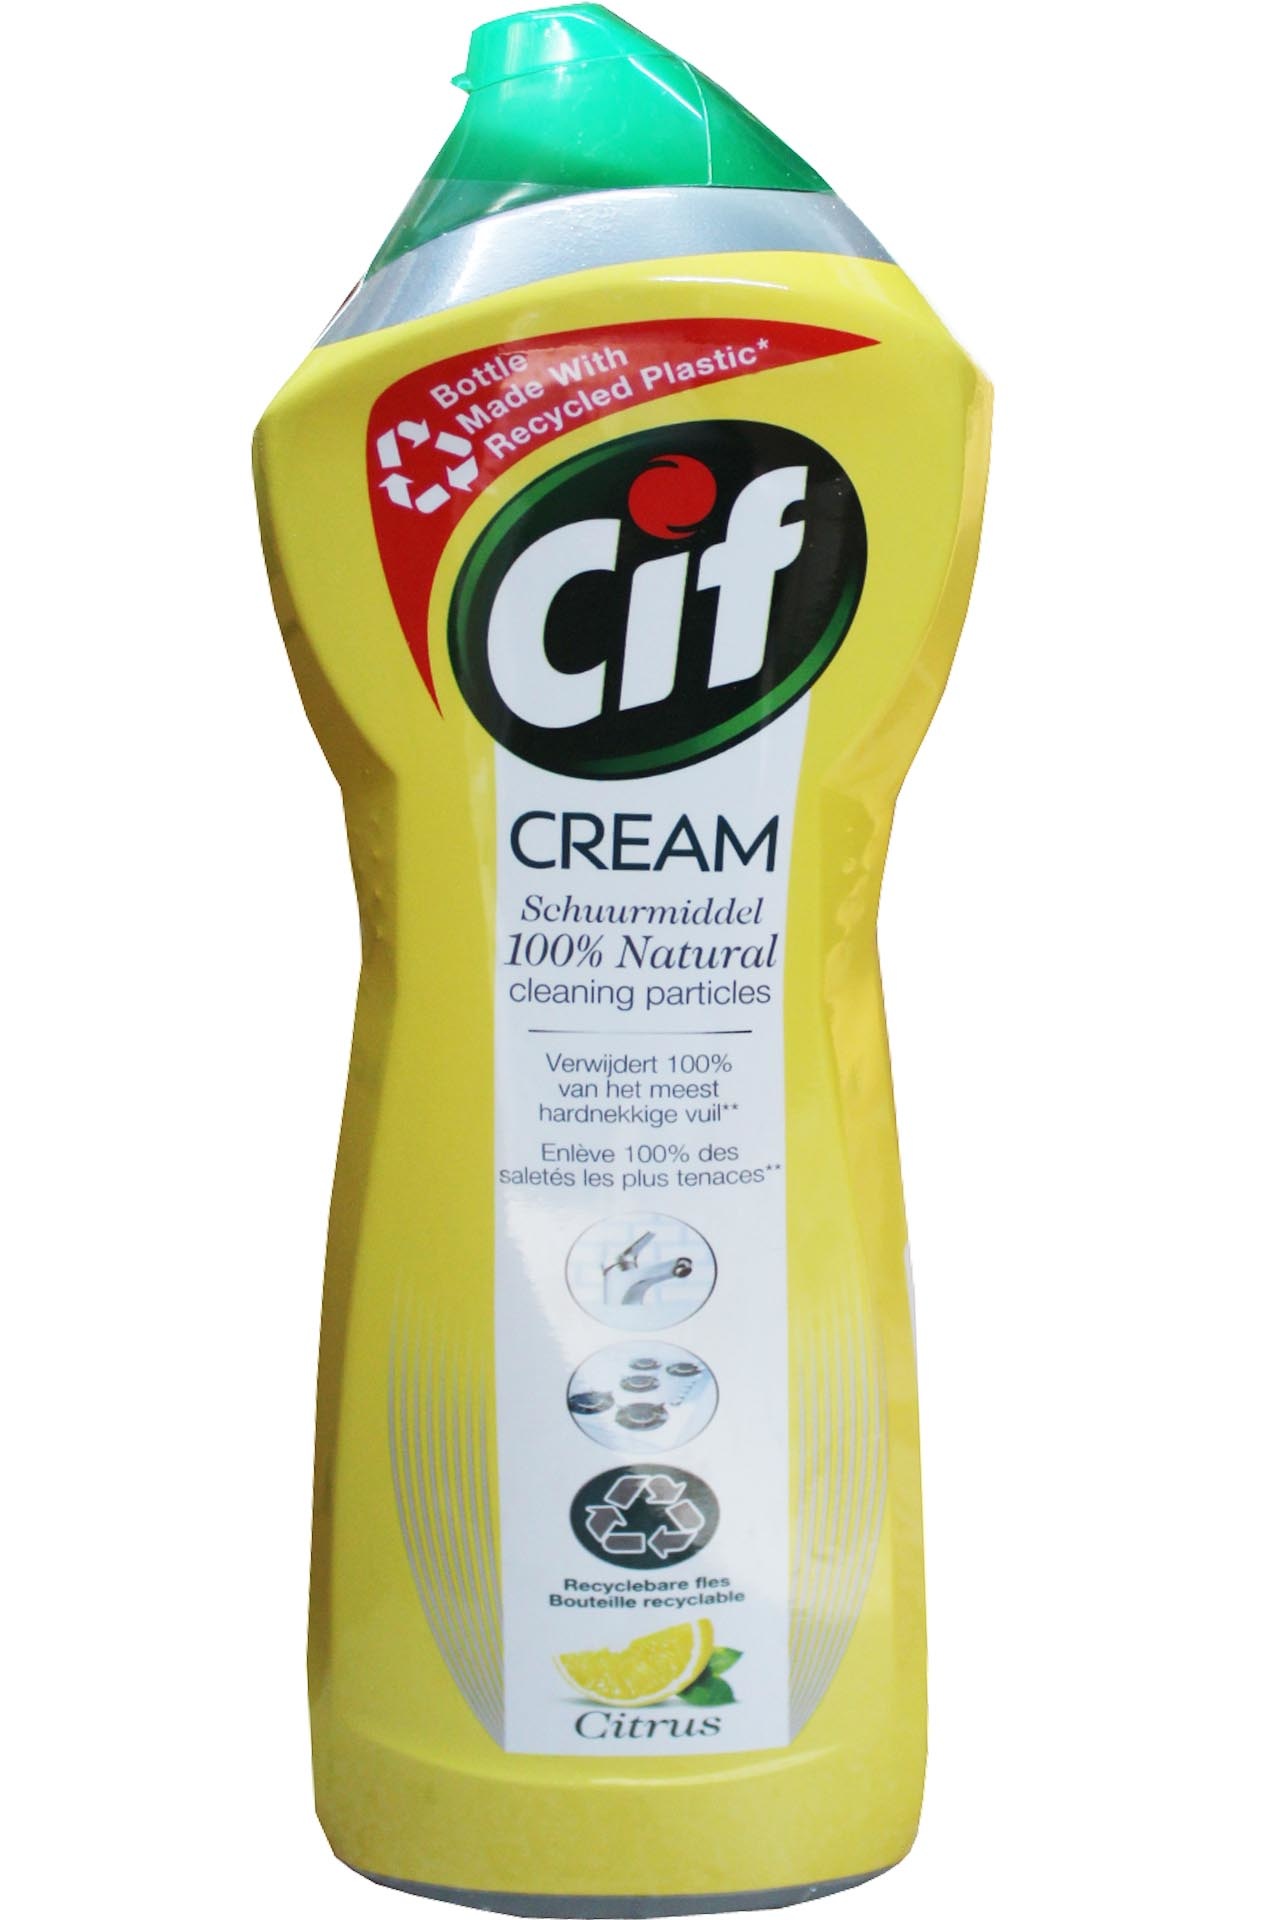 Nettoyant multiusage CIF® Crème Citrus